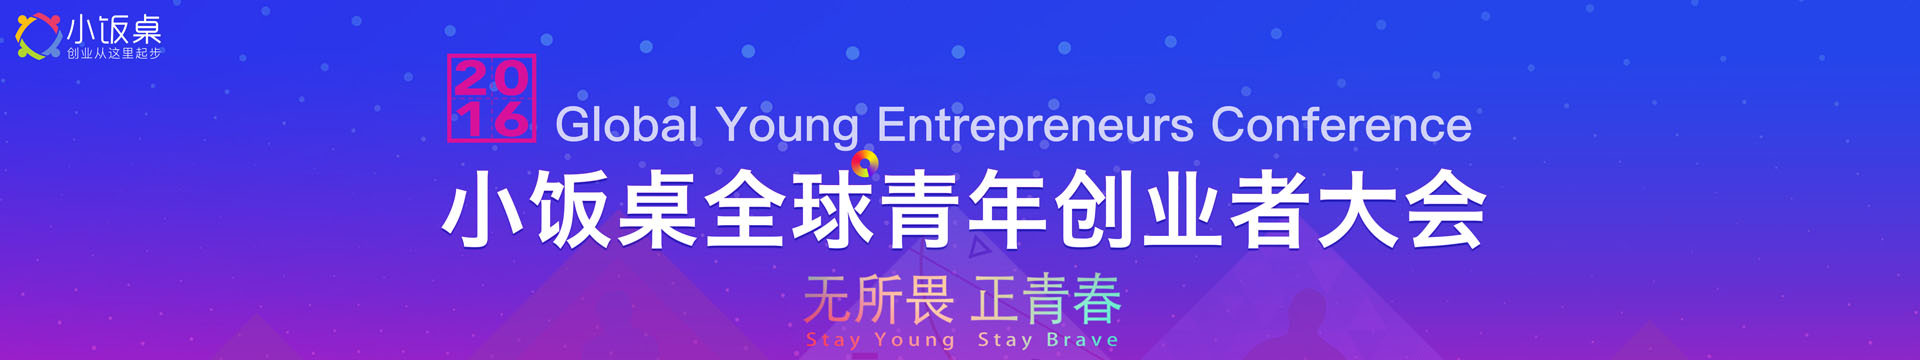 2016小饭桌全球青年创业者大会